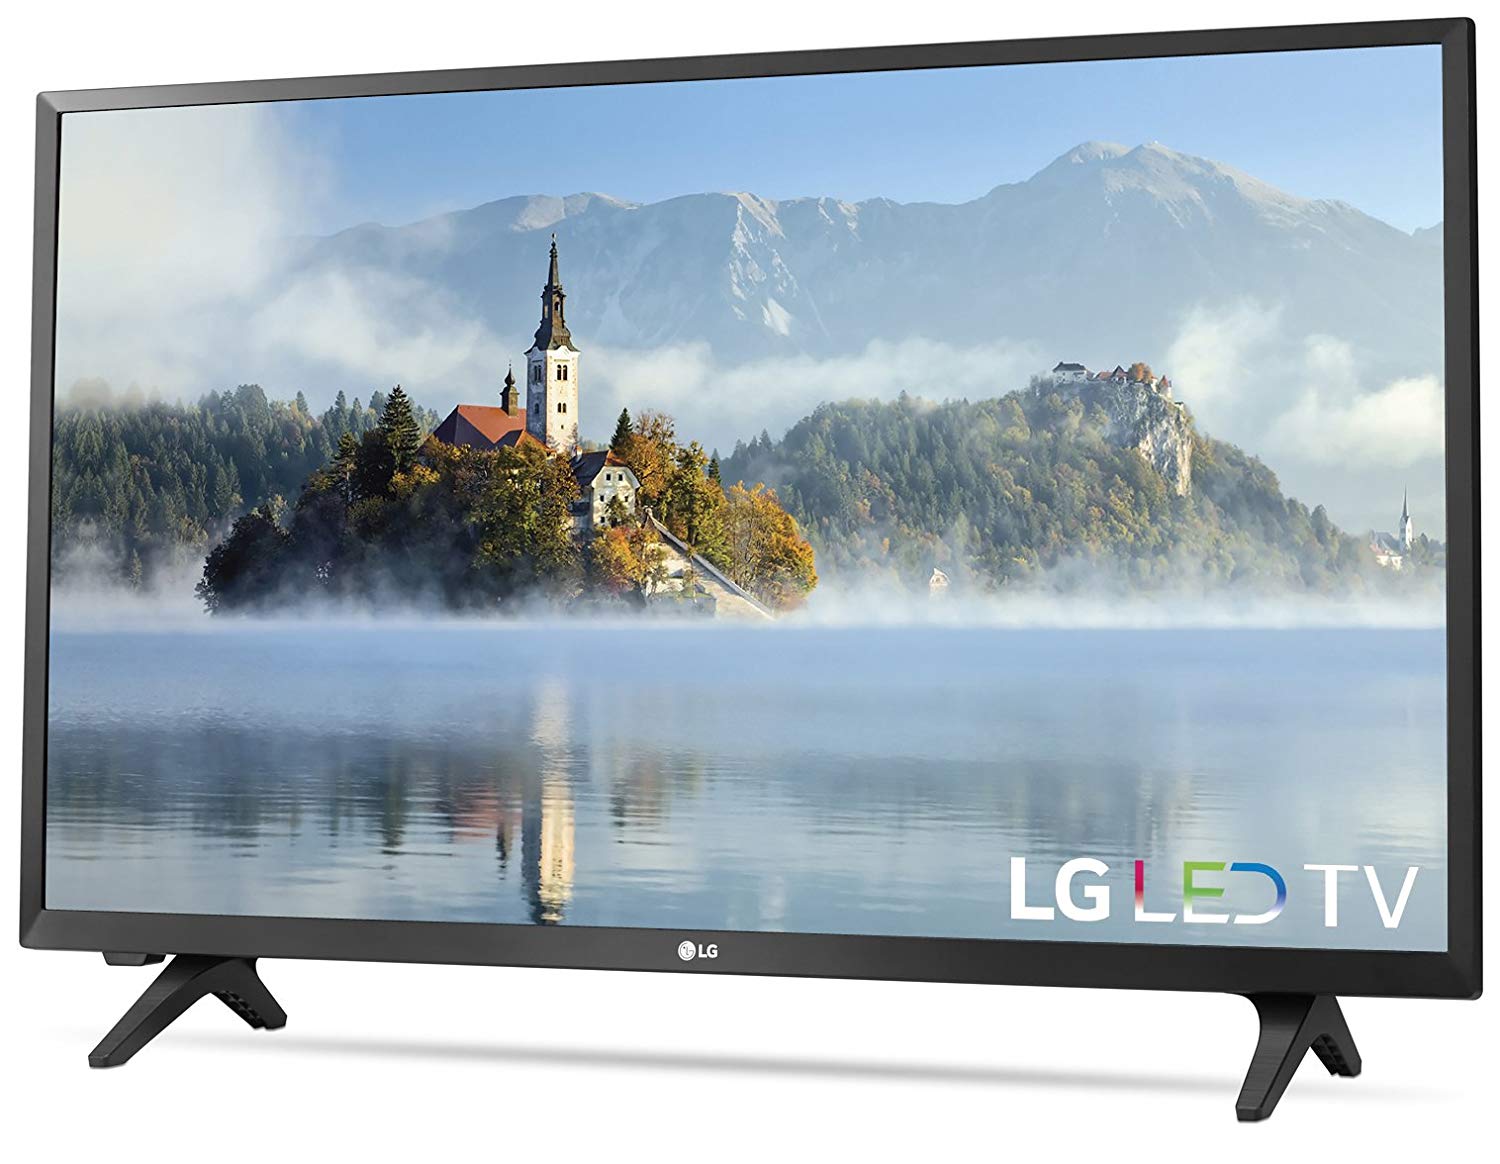 LG Electronics 32LJ500B 32 인치 720p LED TV (2017 년 모델)